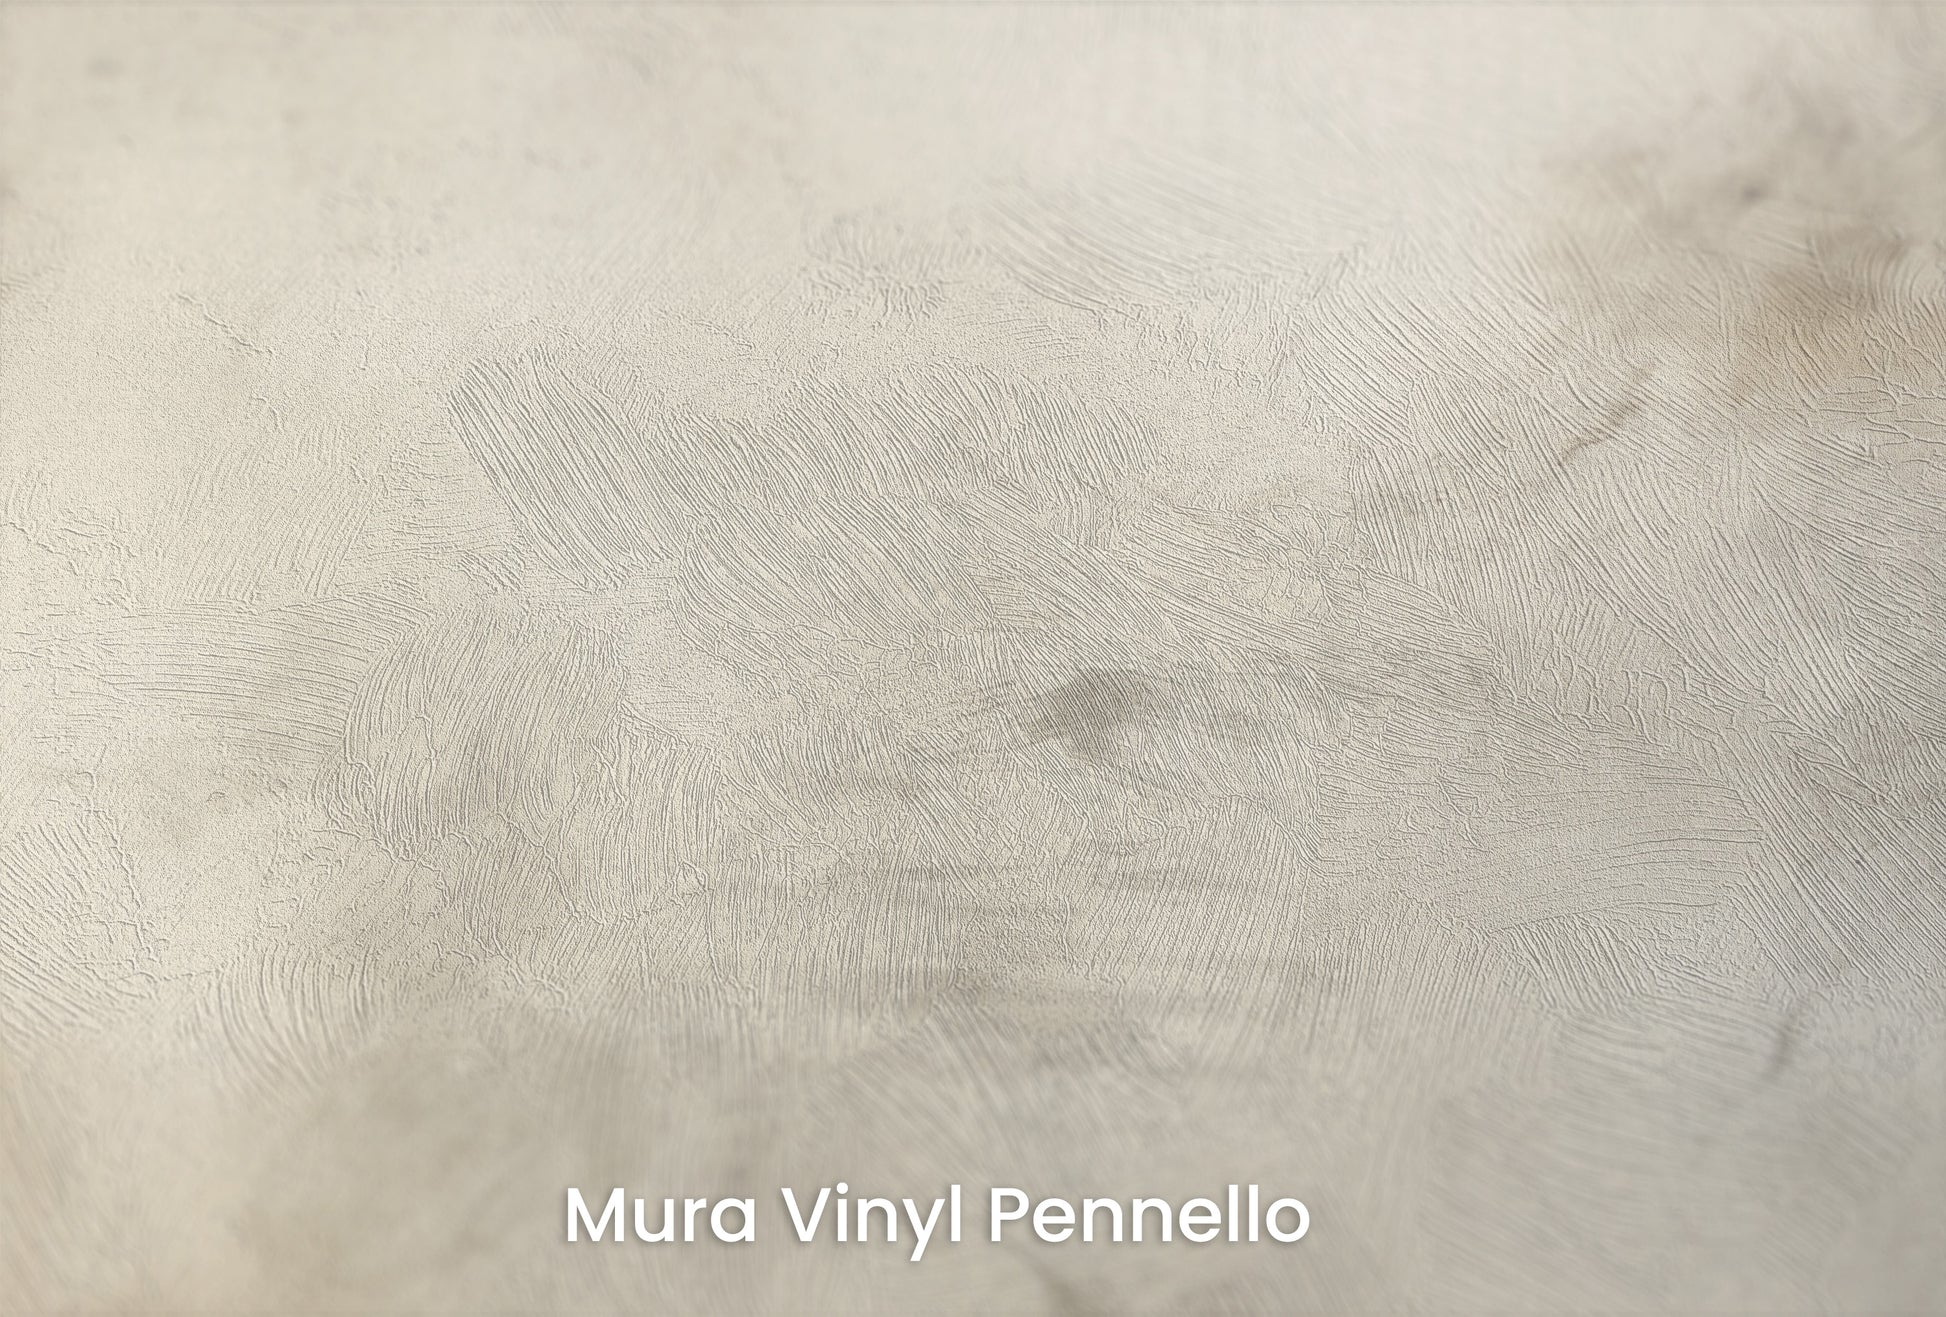 Zbliżenie na artystyczną fototapetę o nazwie WHISPERING CLOUD WALTZ na podłożu Mura Vinyl Pennello - faktura pociągnięć pędzla malarskiego.